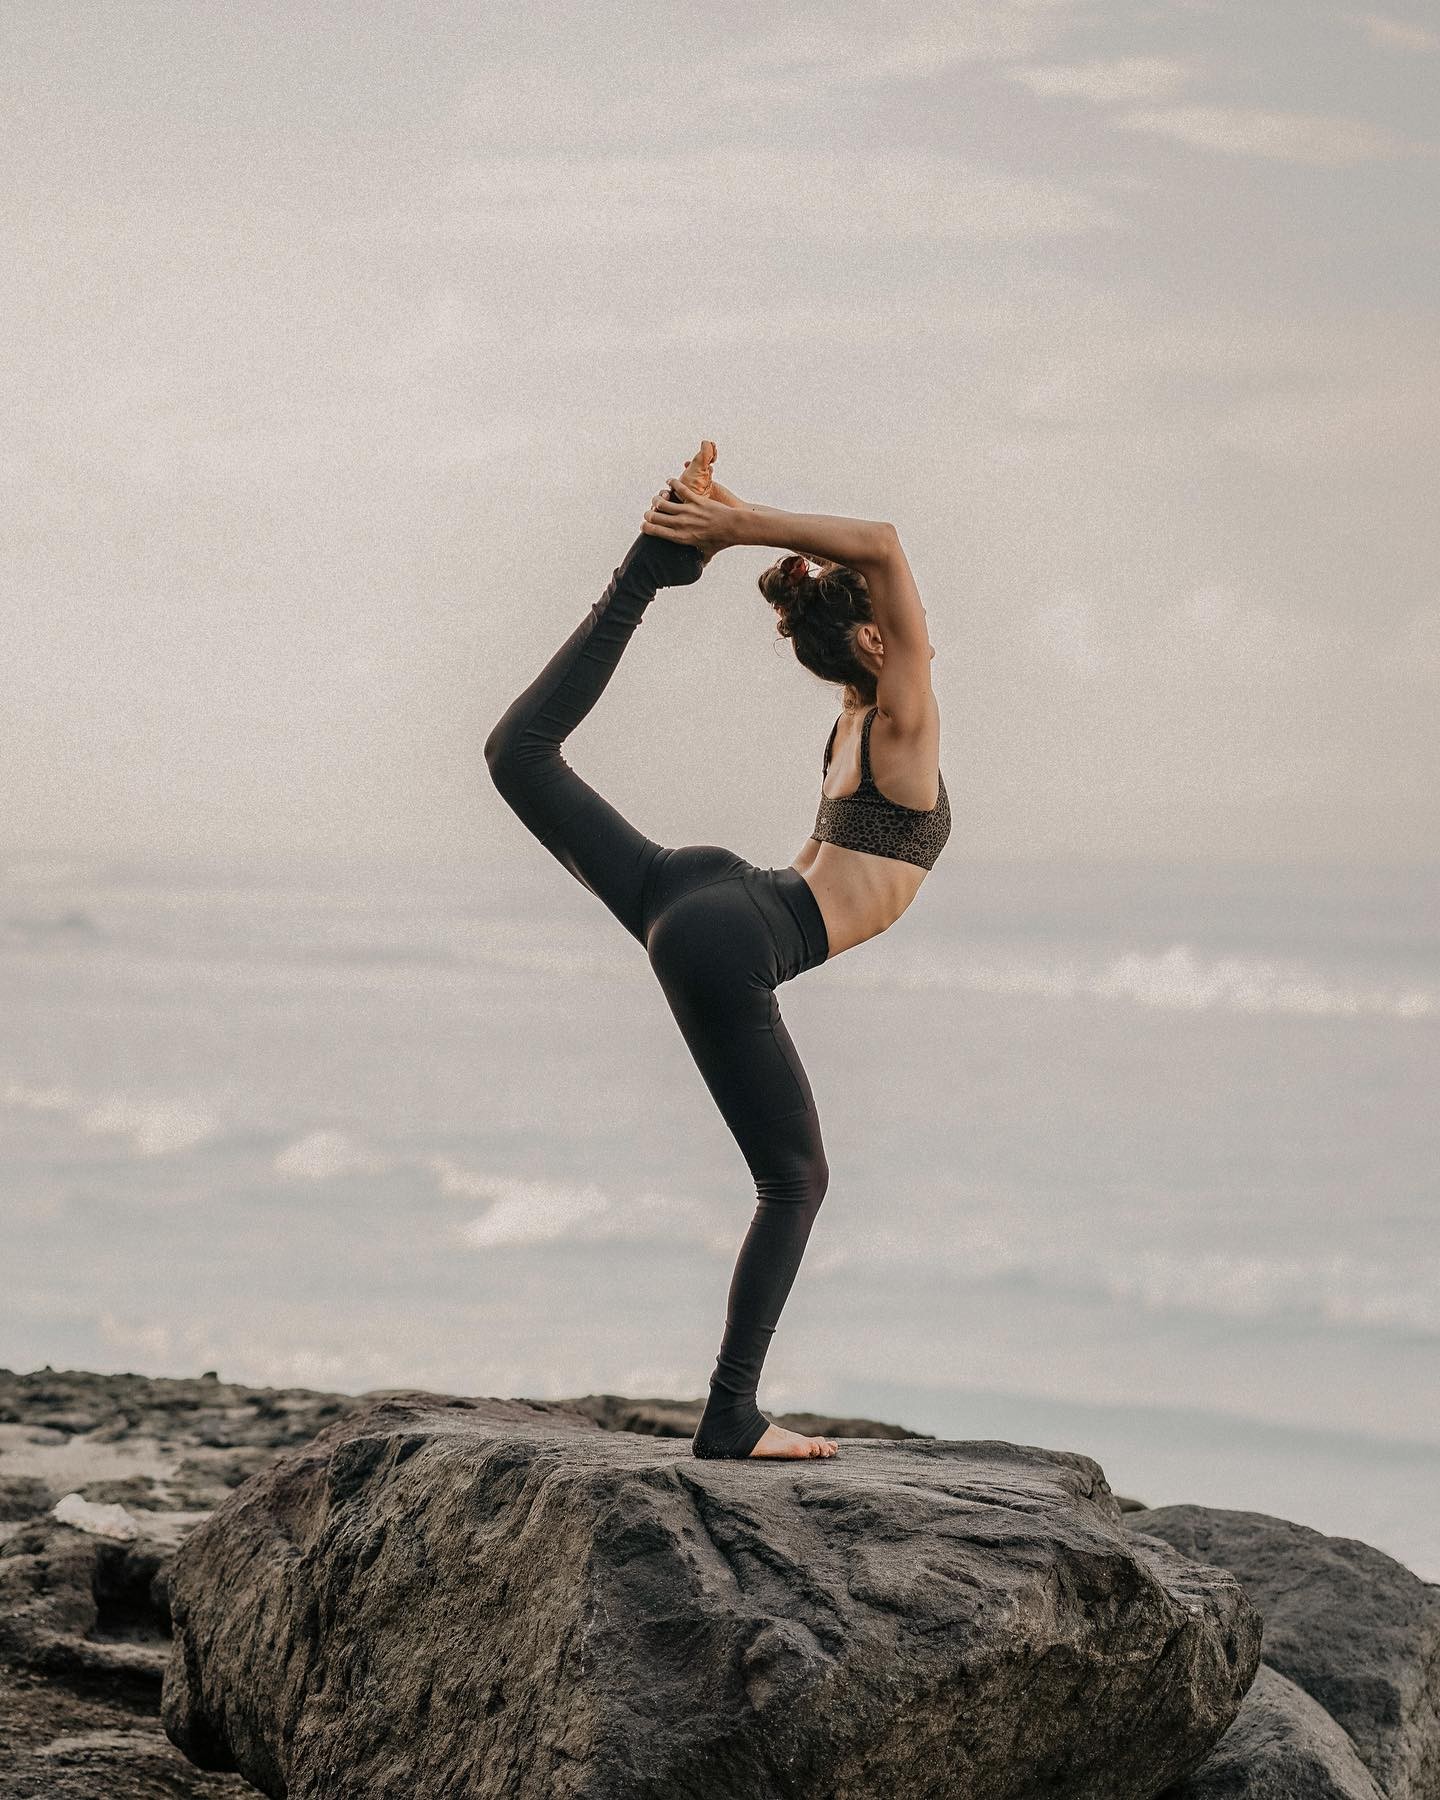 l’univers physique n’est rien d’autre que le Soi se tournant vers Lui-même pour S’experimenter en tant qu’esprit, pensée et matière physique. 

words of wisdom | @chopra 🙏🏻

•

#yoga#yogi#yogini#yogacommunity#yogachallenge#yogaposes#yogaeverywhere#yogaeveryday#practiceandalliscoming#flexibility#flexible#flexiblegirl#flexibilitytraining#yogagram#yogagoals#practice#flexible#practiceyoga#bodypositive#backbends#empower#empoweringwomen#empowerment#dancer#yogalife#selflove#selflovejourney#wordsofwisdom#aloyoga#dancer#dancerpose